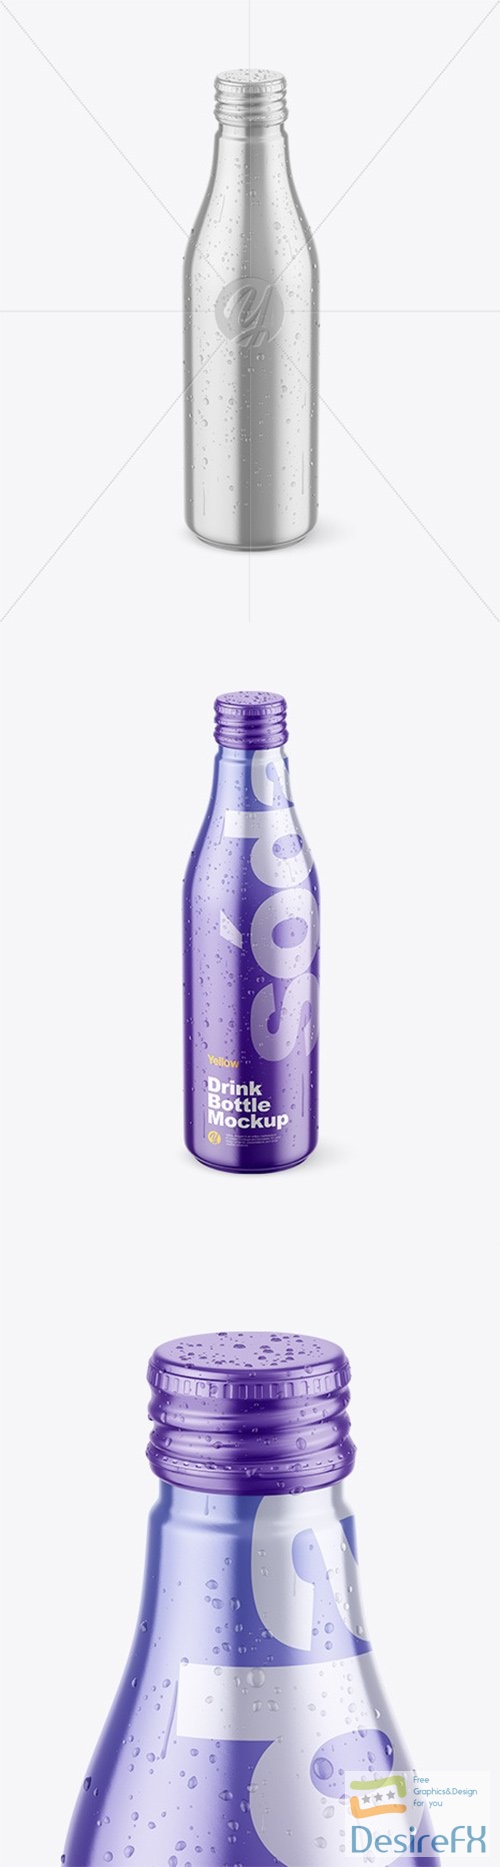 Metallic Drink Bottle w/ Drops Mockup 78314 TIF